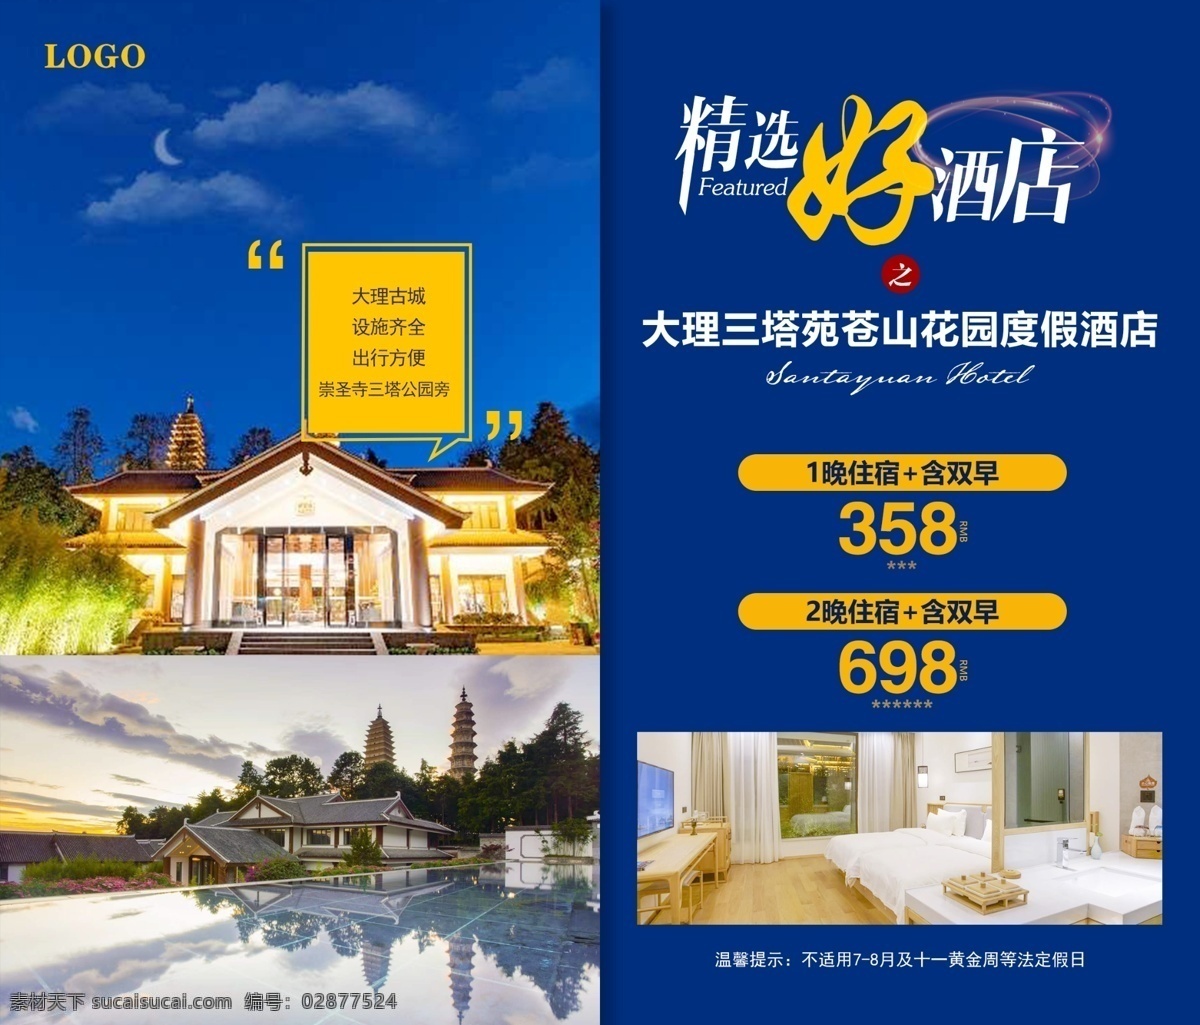 大理 三塔 苑 酒店 云南 三塔苑 亲子酒店 宣传 正能量 广告 旅行 海报 古城